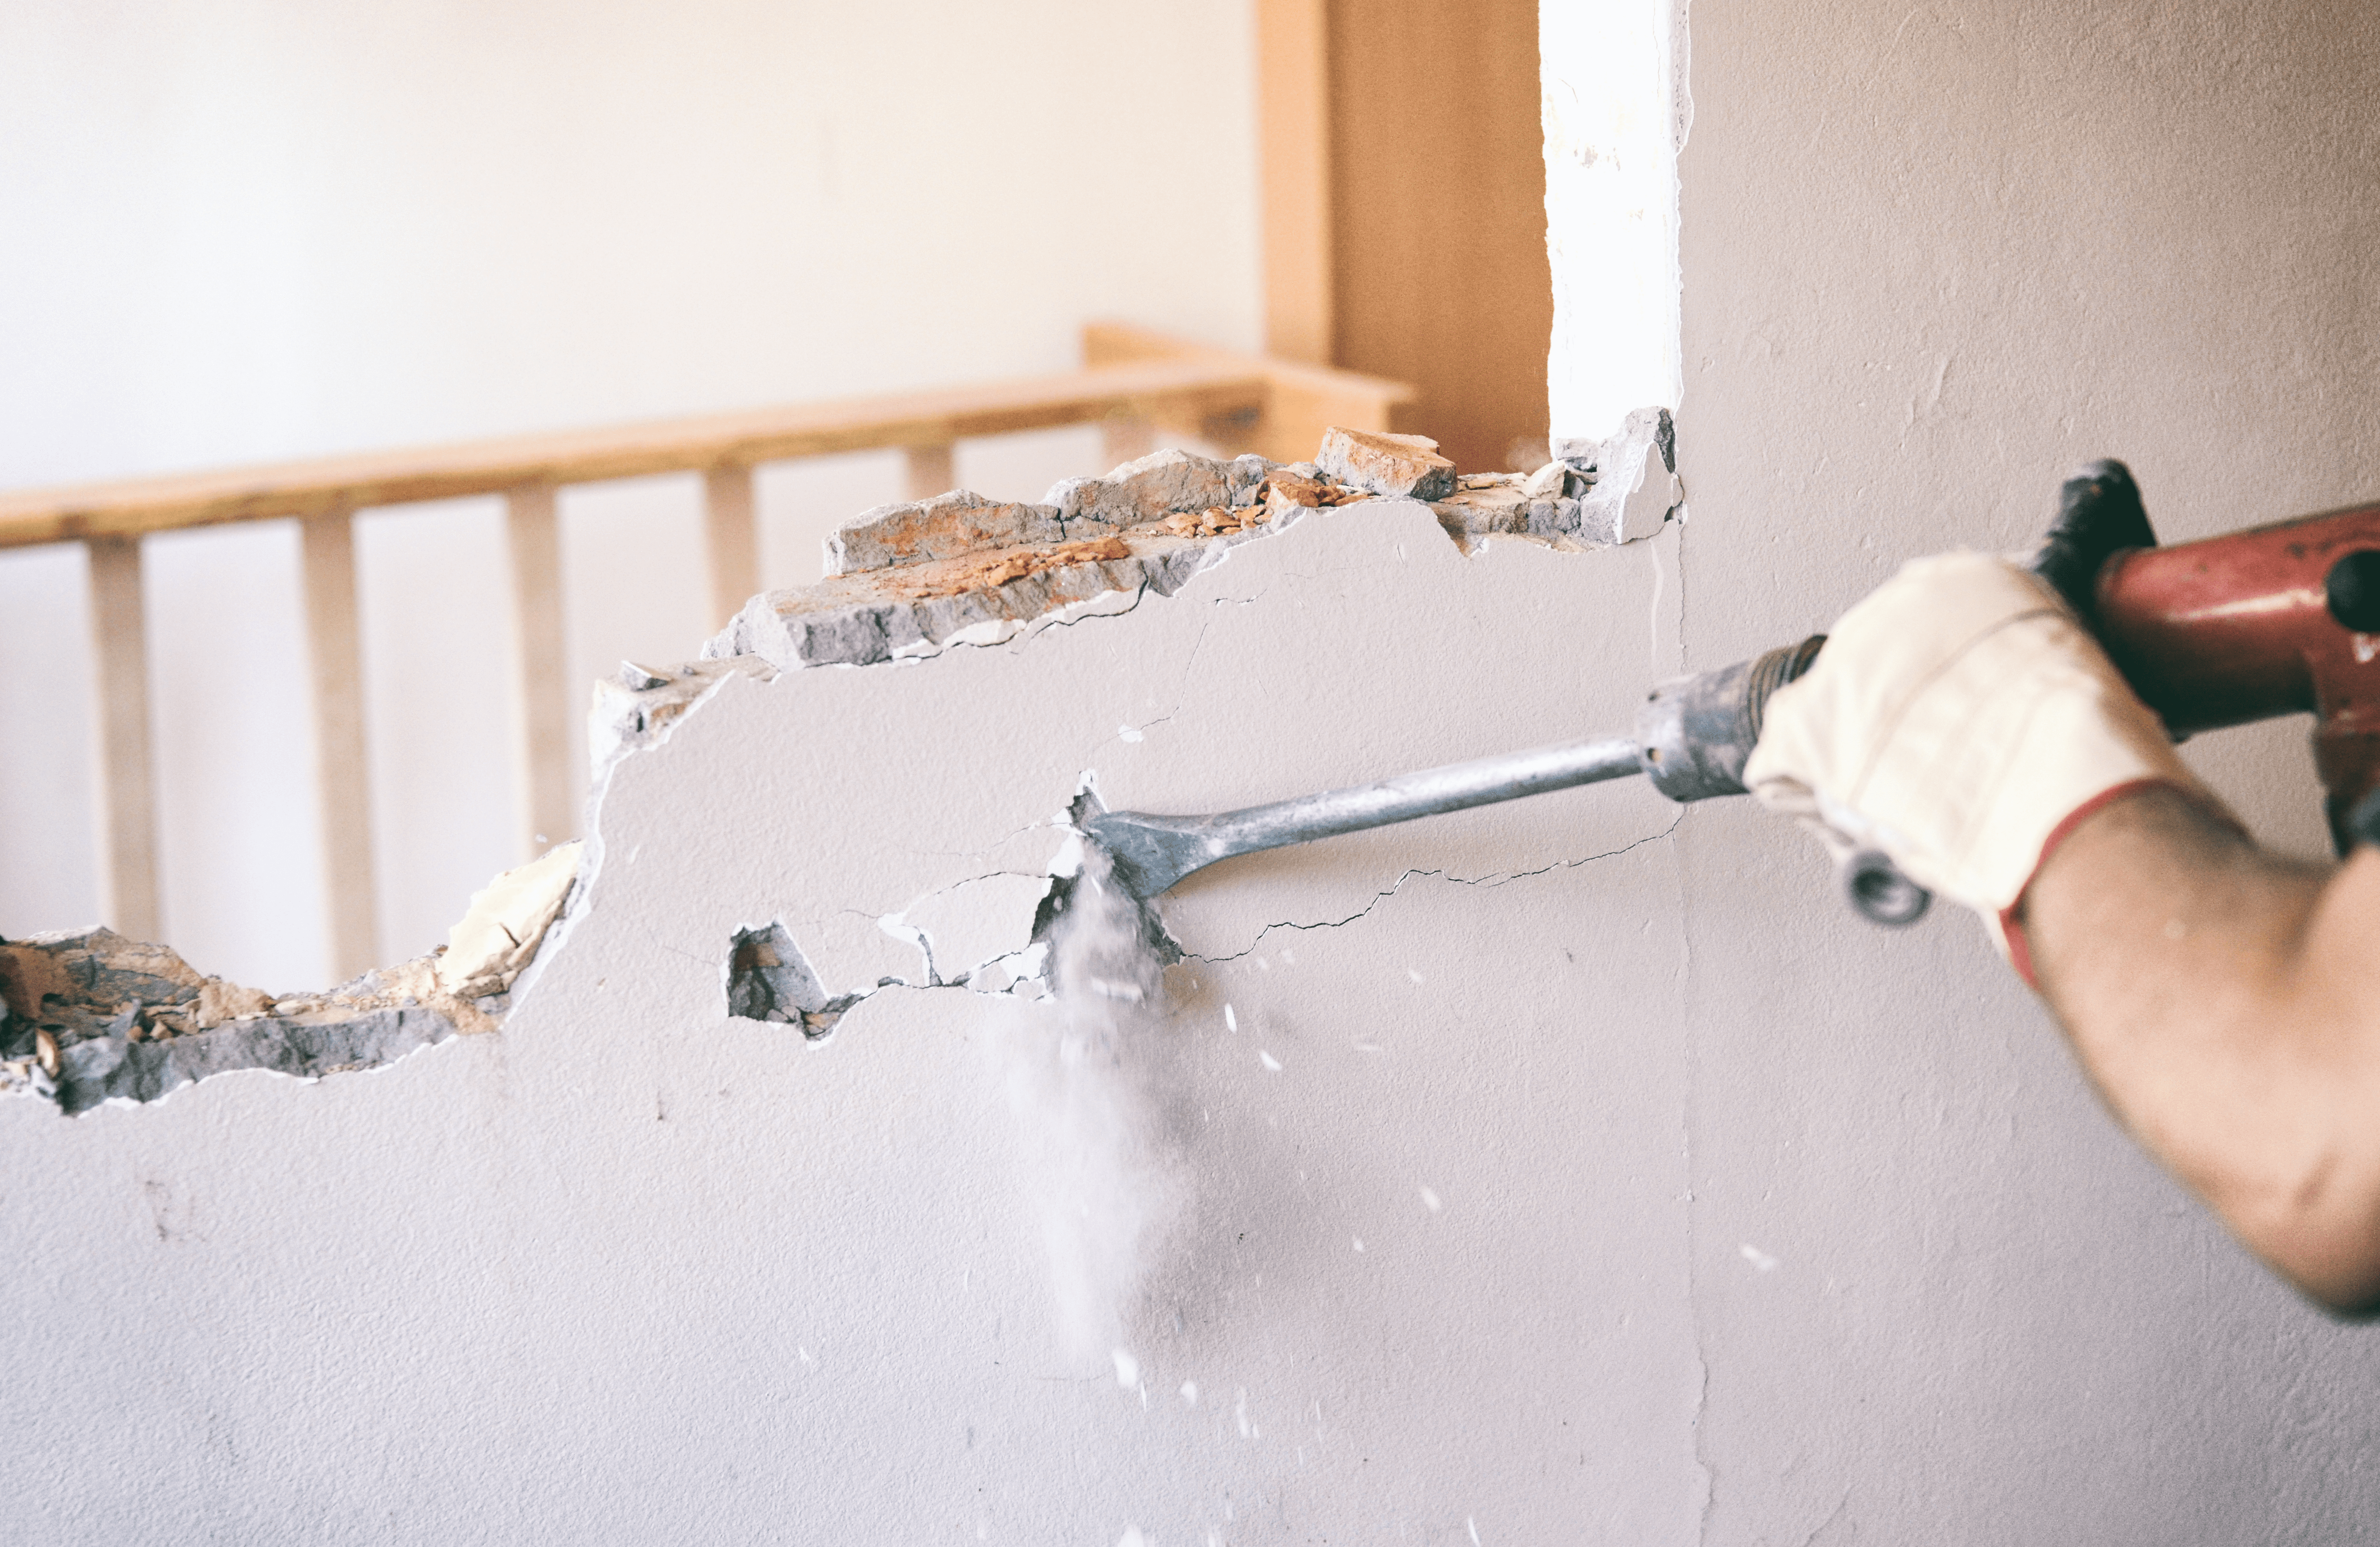 Voraussetzungen für: Gestattung eines geplanten Wanddurchbruchs zur Verbindung von zwei Wohnungen